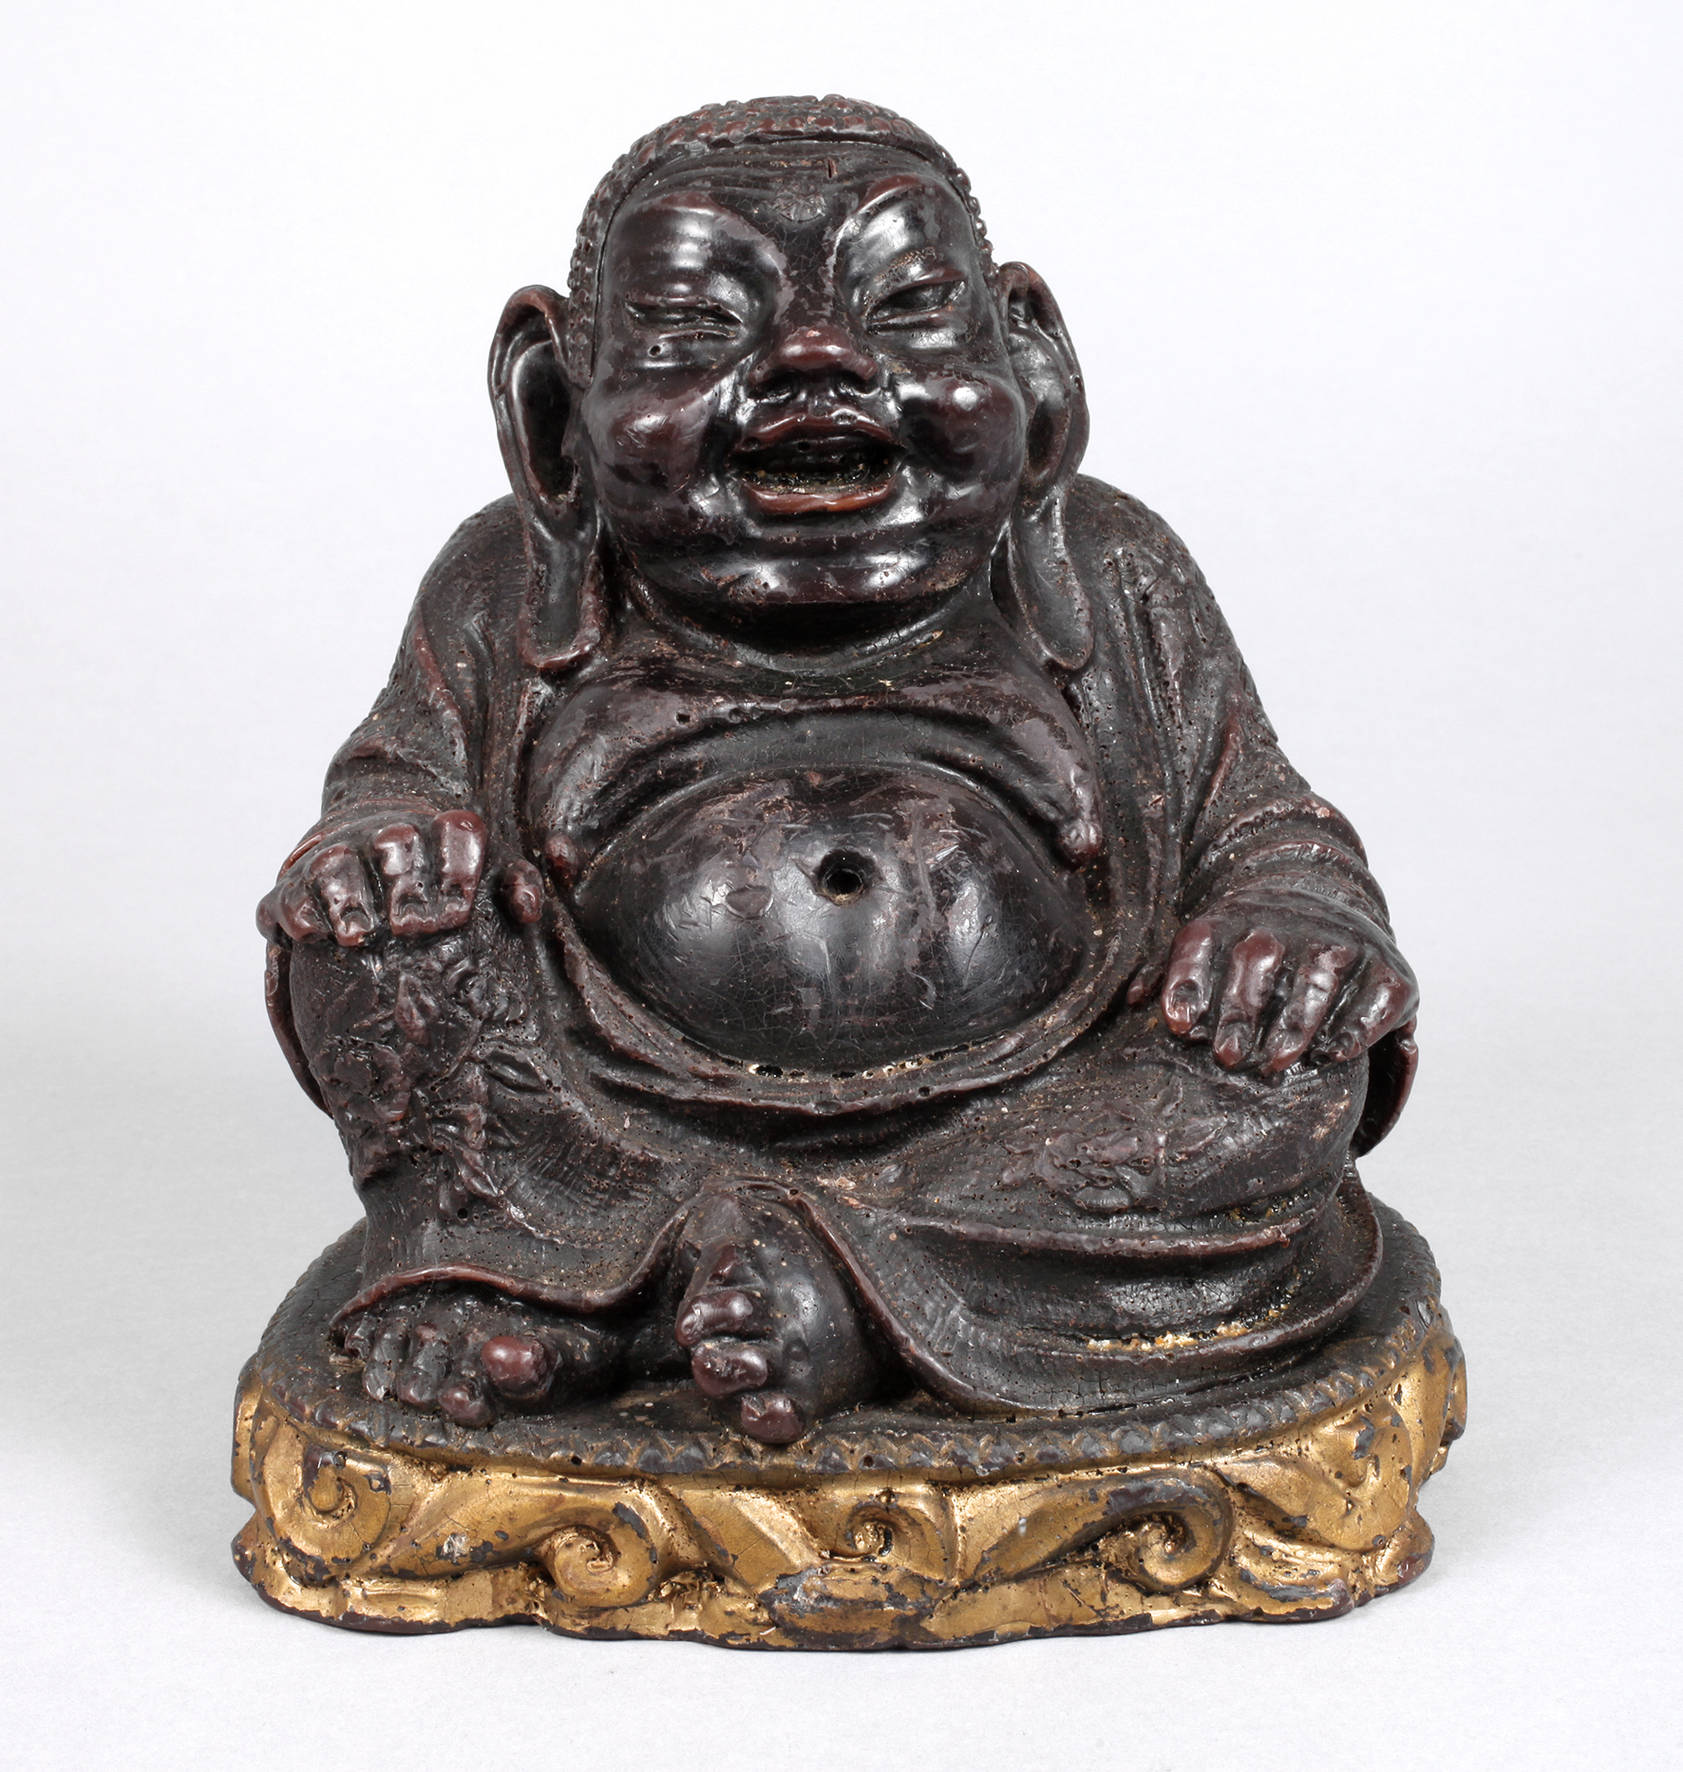 Wachsfigur Sitzender Buddha